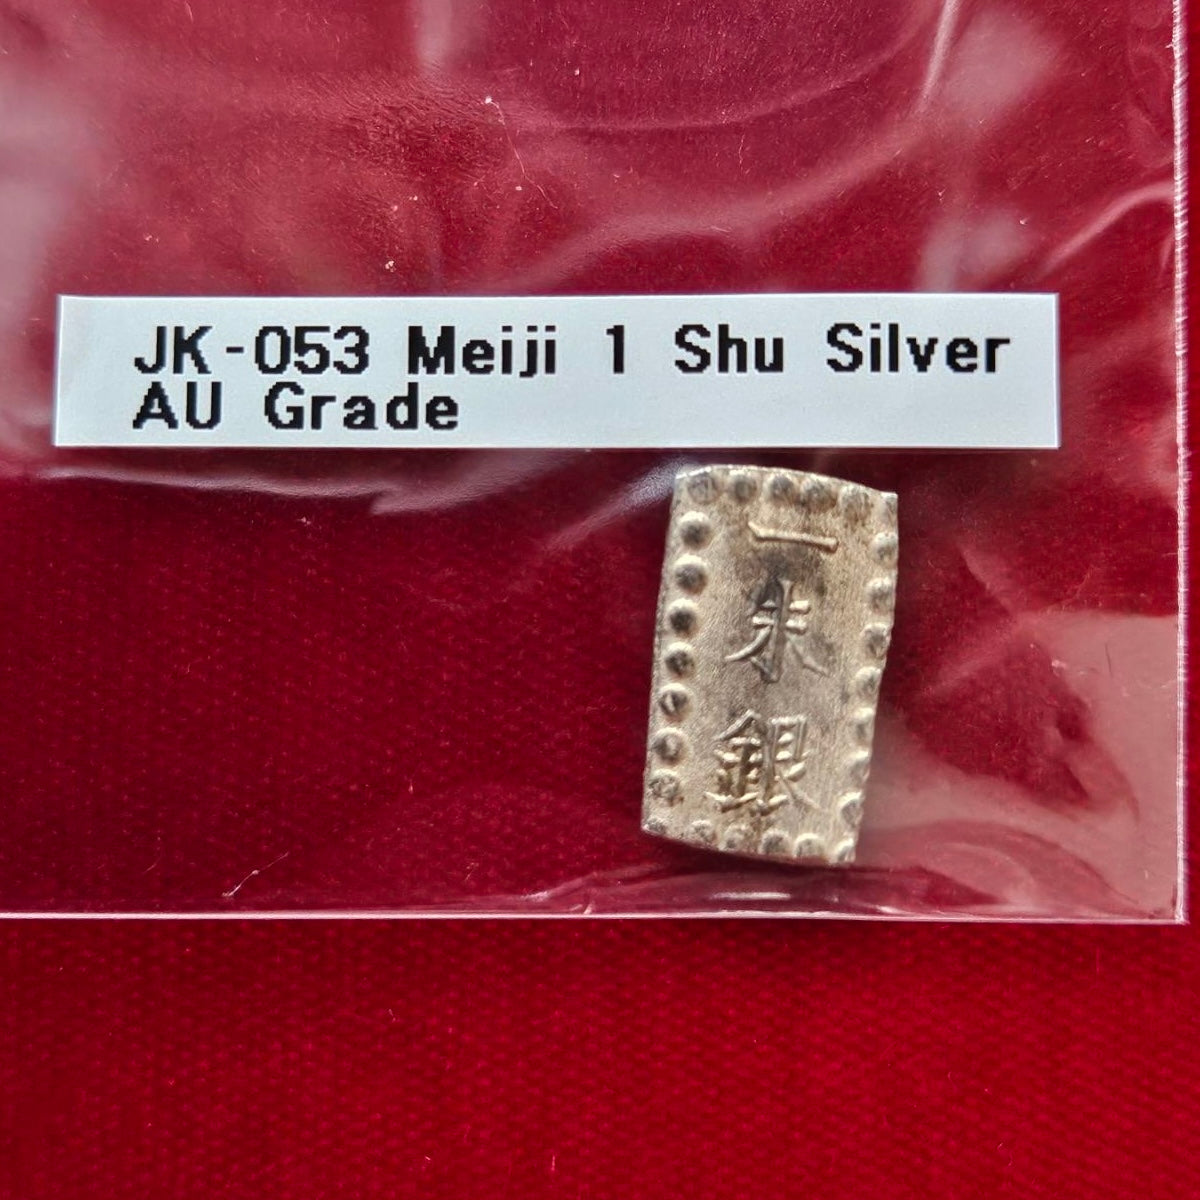 [JK-053] Meiji 1 Shu Silver EF grade 1 Pack